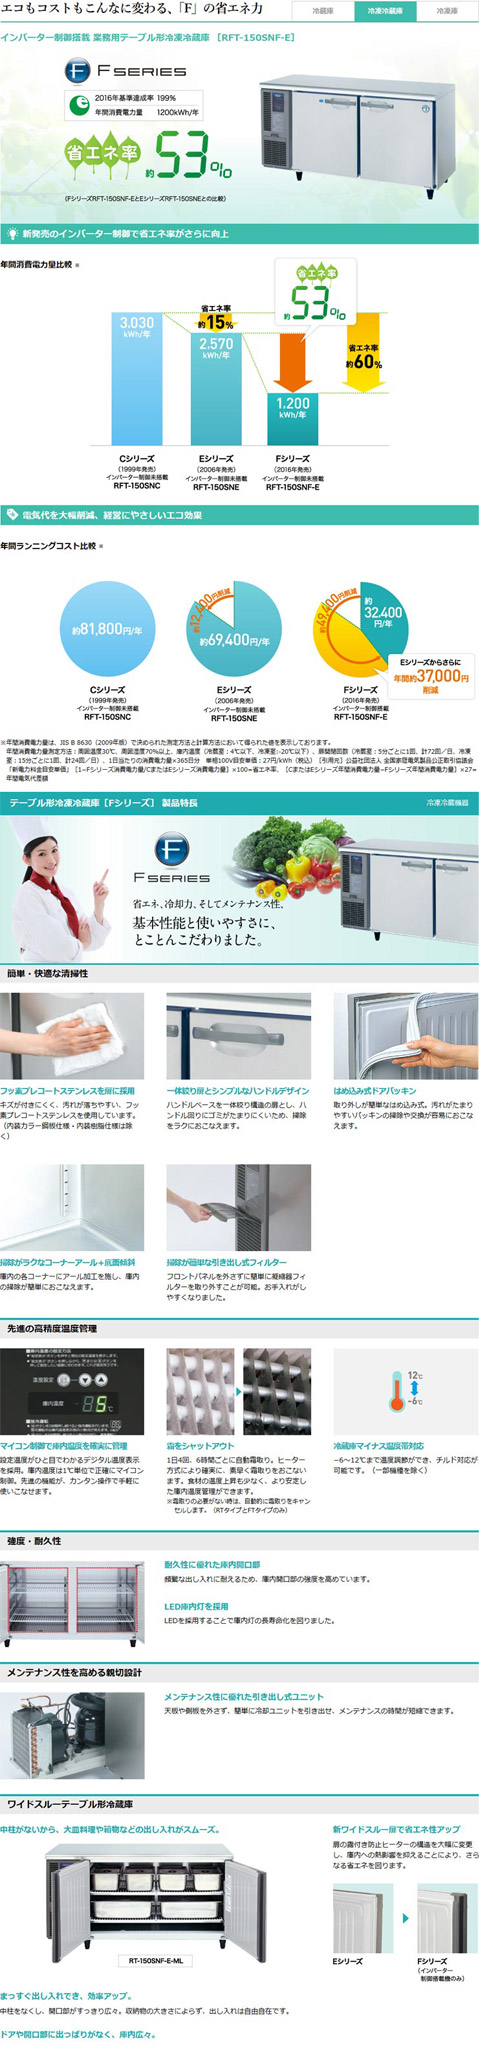 ホシザキ・星崎 横型インバーター冷凍冷蔵庫 型式：RFT-180SDG-1 送料無料（メーカーより直送）メーカー保証付  :R0406303:空調店舗厨房センター 通販 